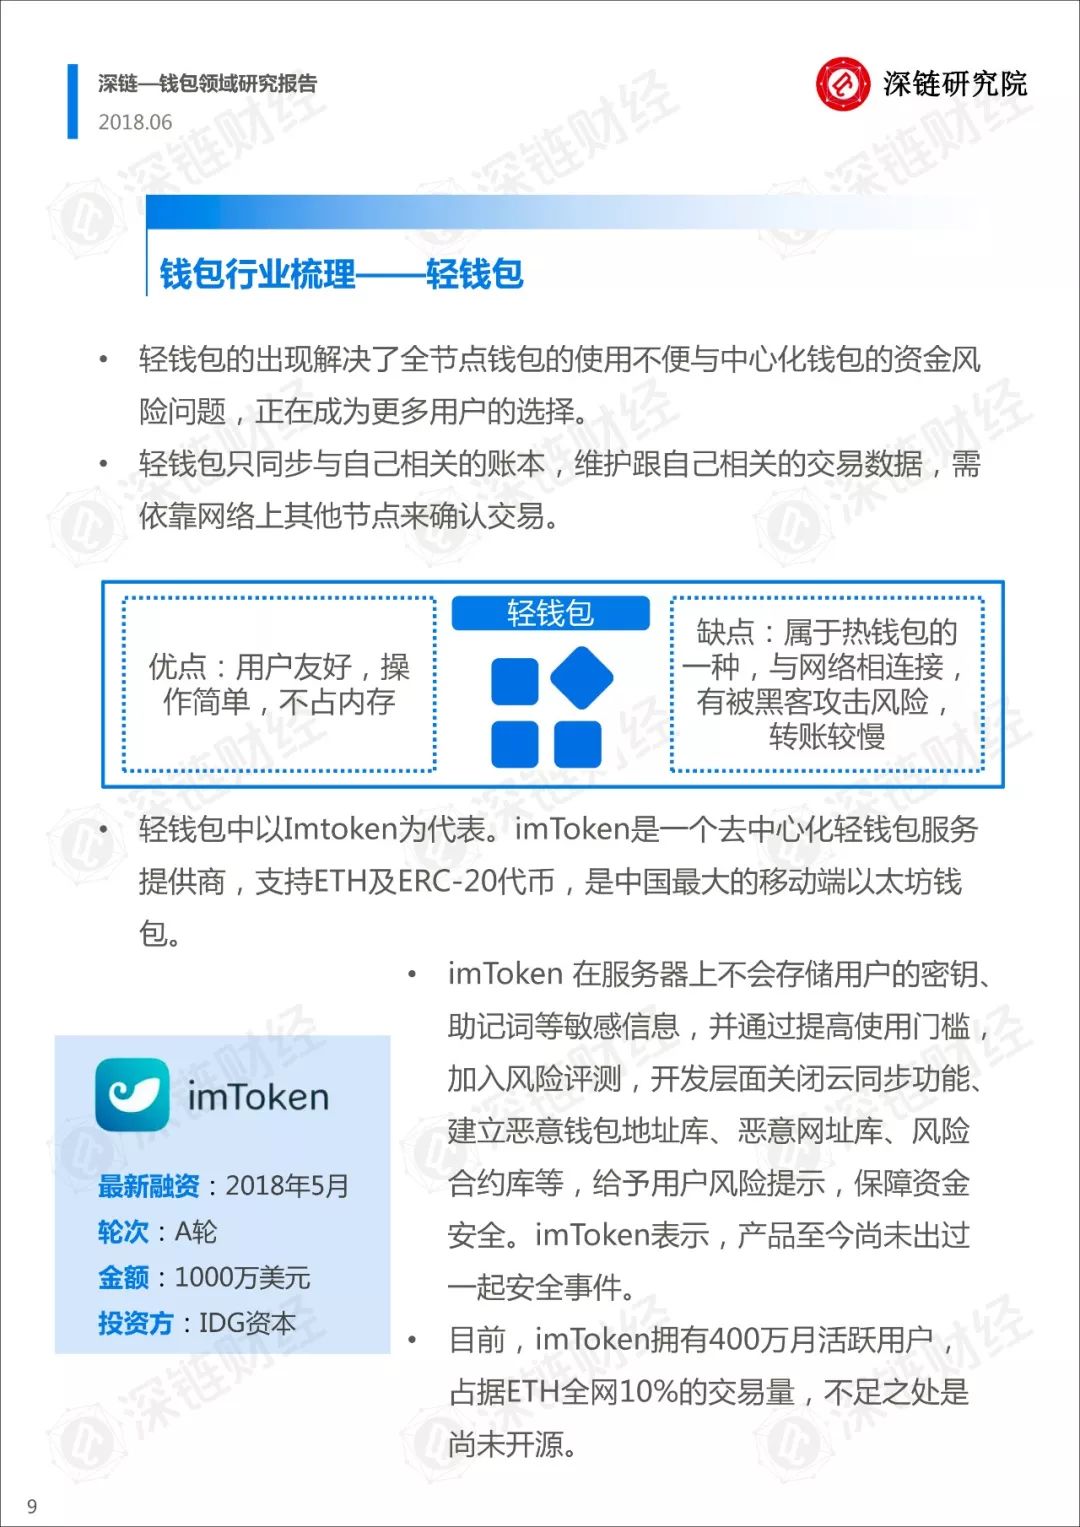 用户中国面包是谁_imtoken用户数量_imtoken 中国用户